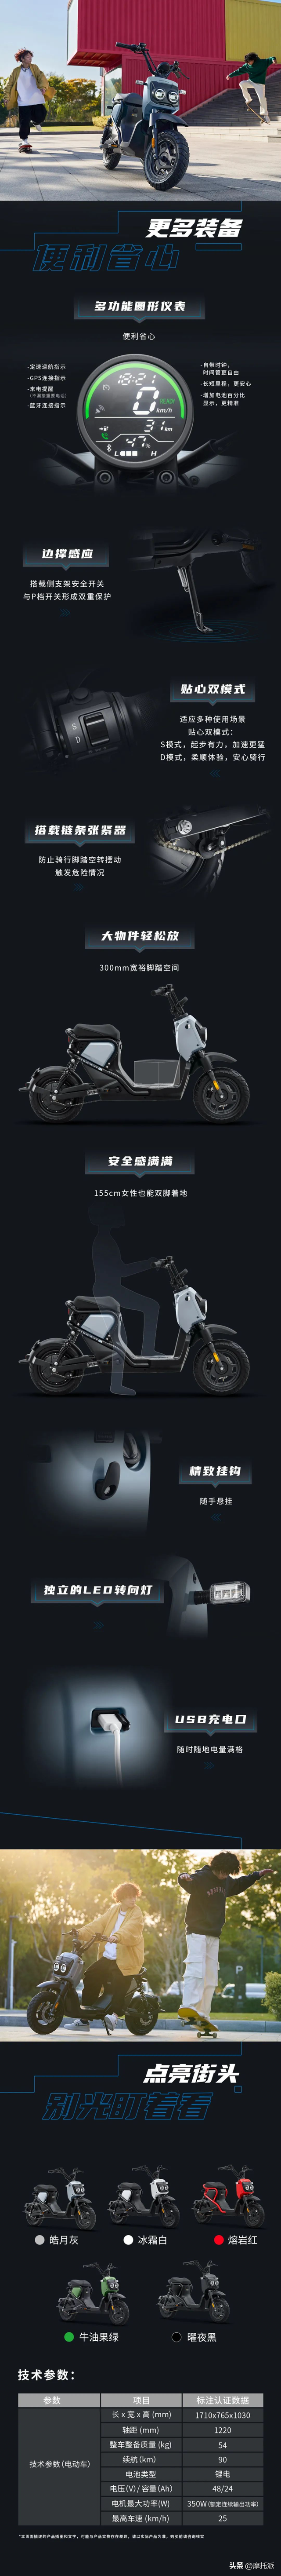 锚定6k价位的本田电动自行车上市，它们能感动Z世代年轻用户吗